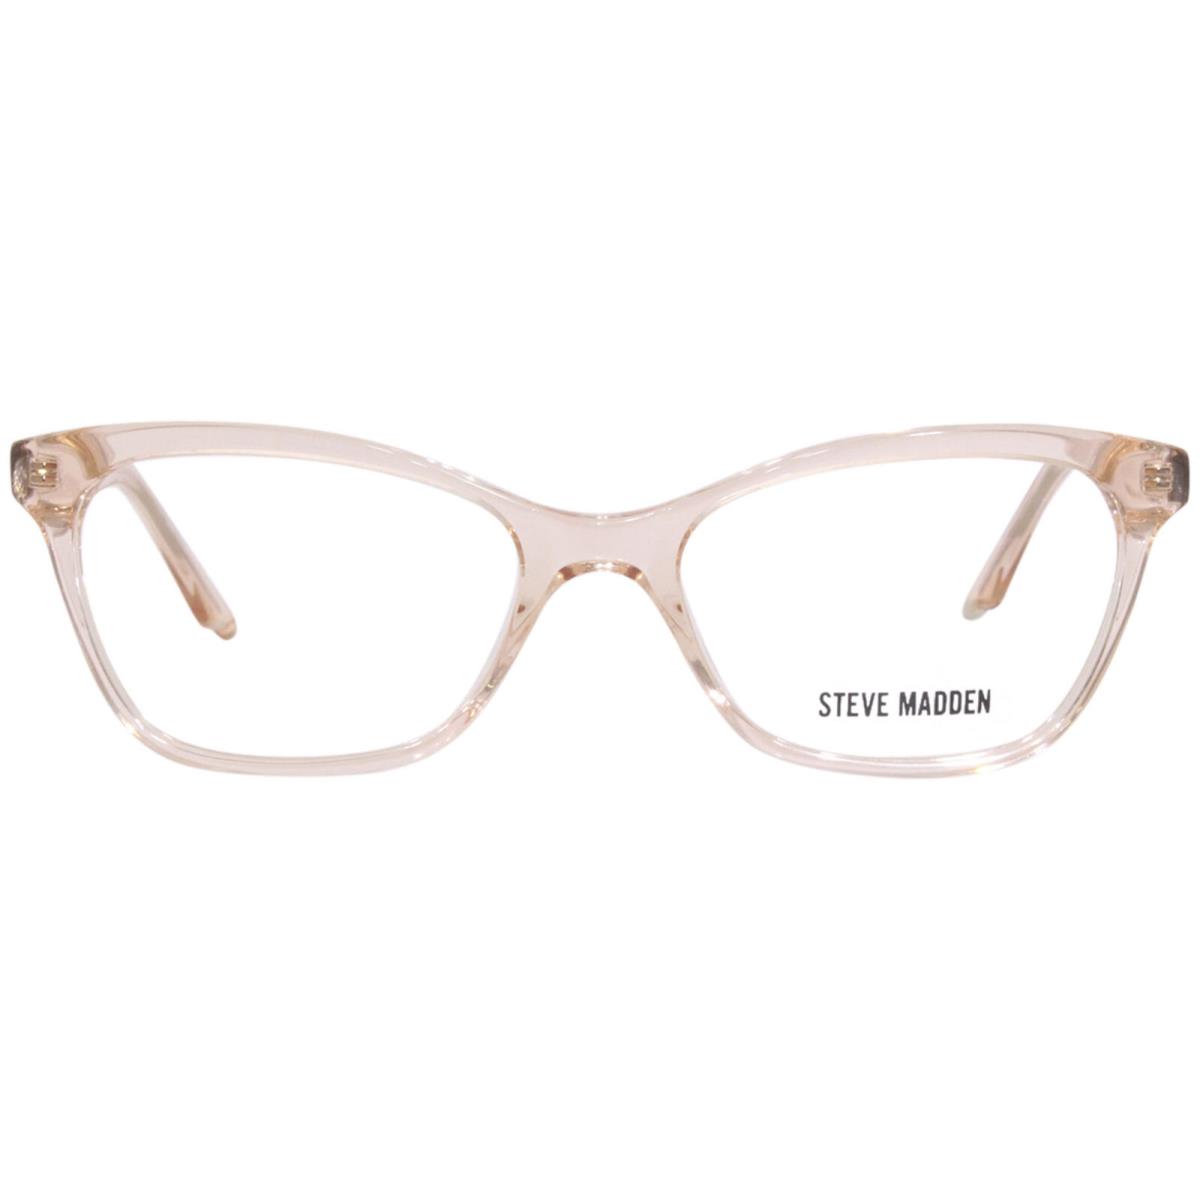 Steve Madden Cheryll Eyeglasses Frame Women`s Blush Full Rim Cat Eye 52mm